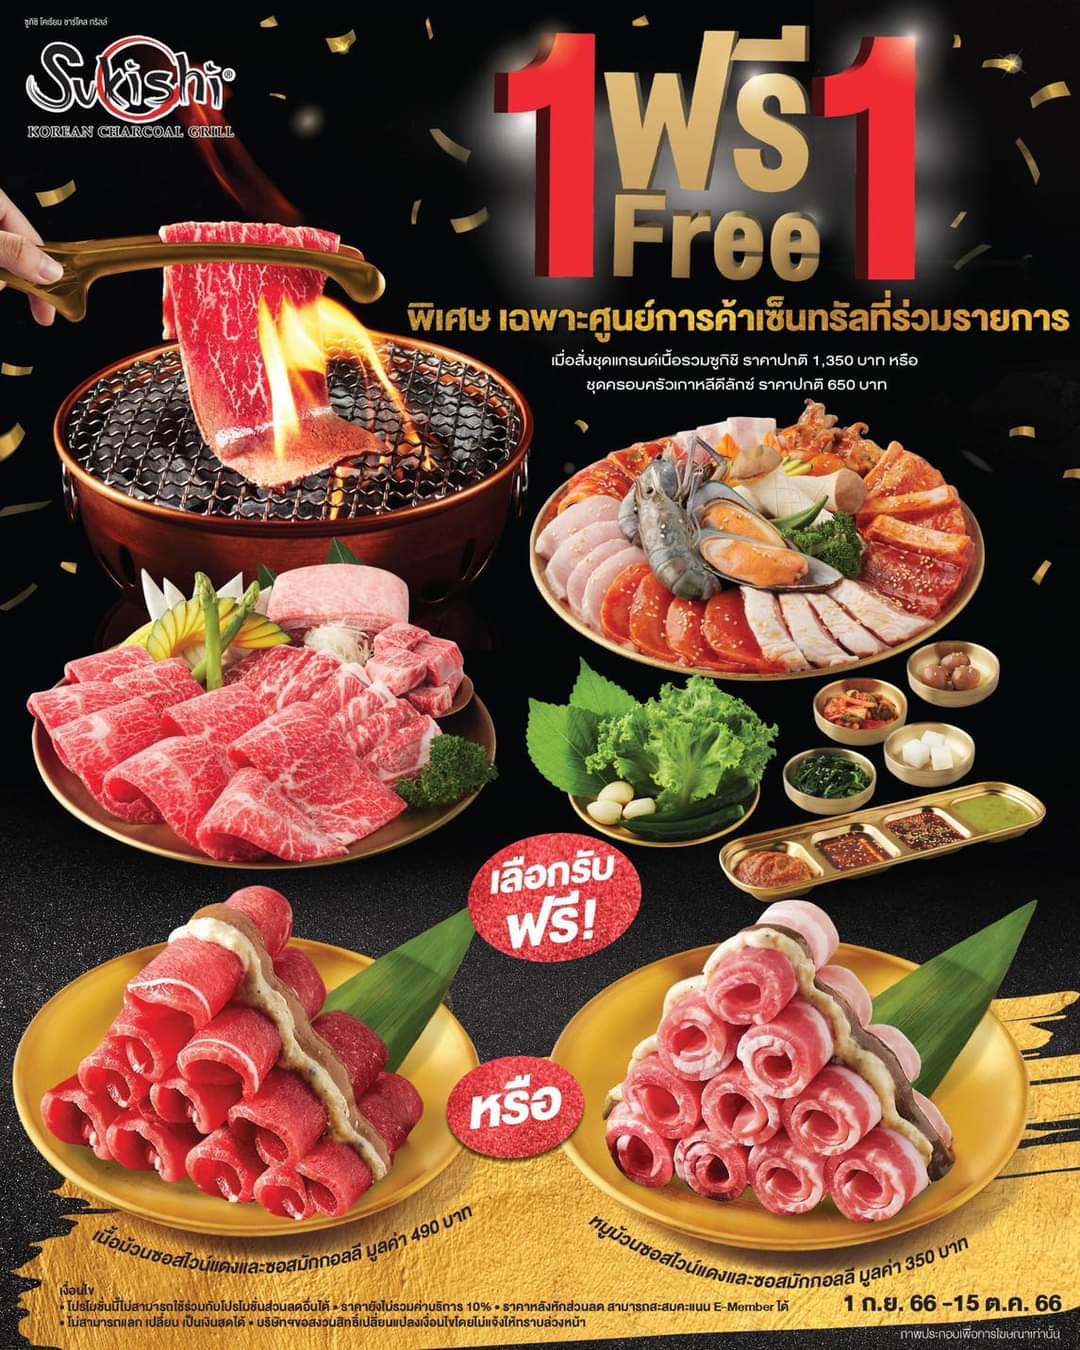 โปรโมชั่น ซูกิชิ บุฟเฟ่ต์ : ซื้อ 1 ฟรี 1 ️ ที่ Sukishi Korean Charcoal Grill เฉพาะศูนย์การค้าเซ็นทรัลที่ร่วมรายการ